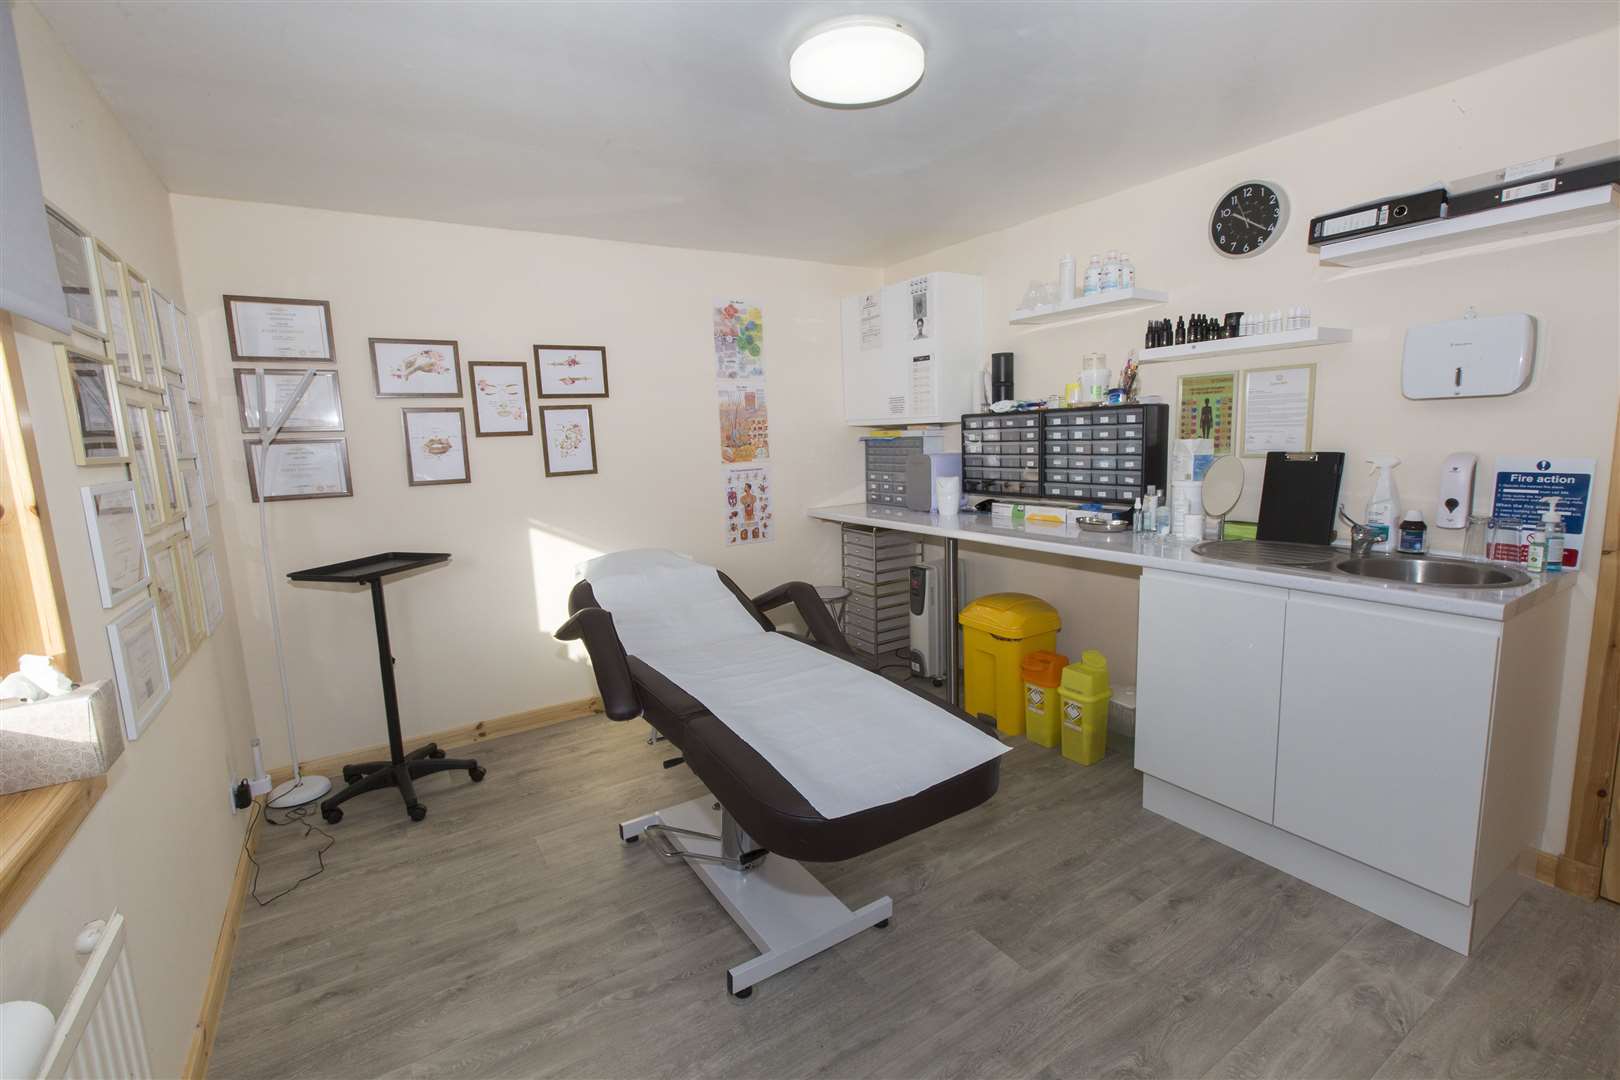 Kerry Harrison's treatment room in her home in Castletown. Photo: Robert MacDonald/Northern Studios